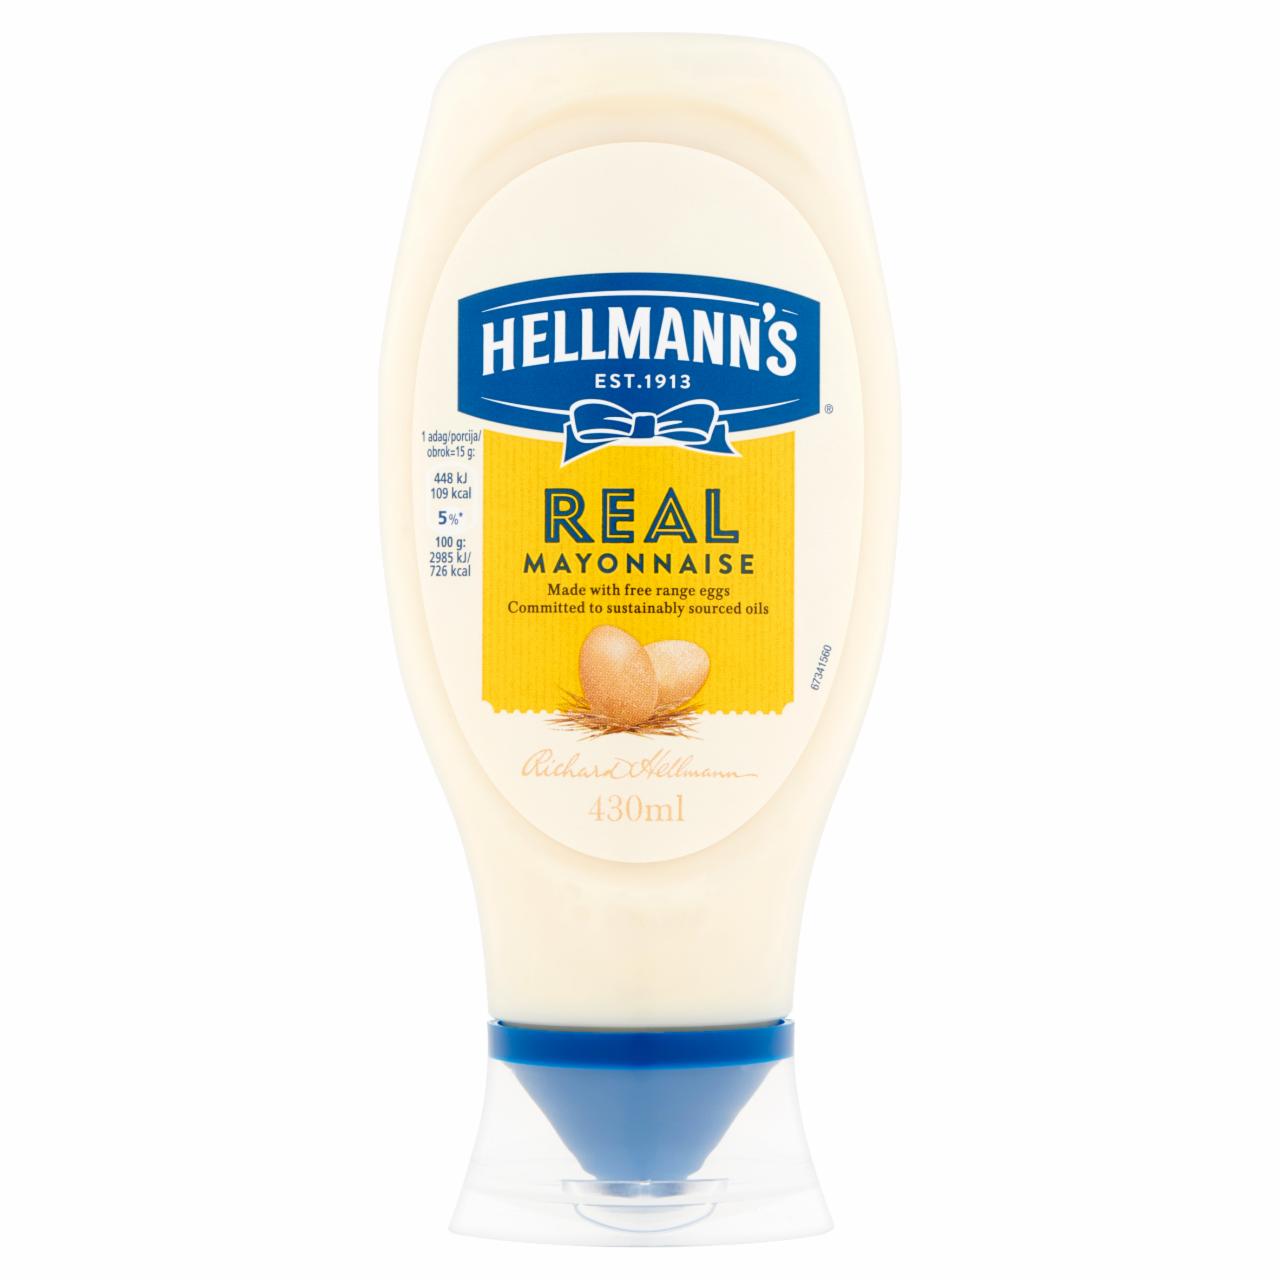 Képek - Hellmann's majonéz 430 ml